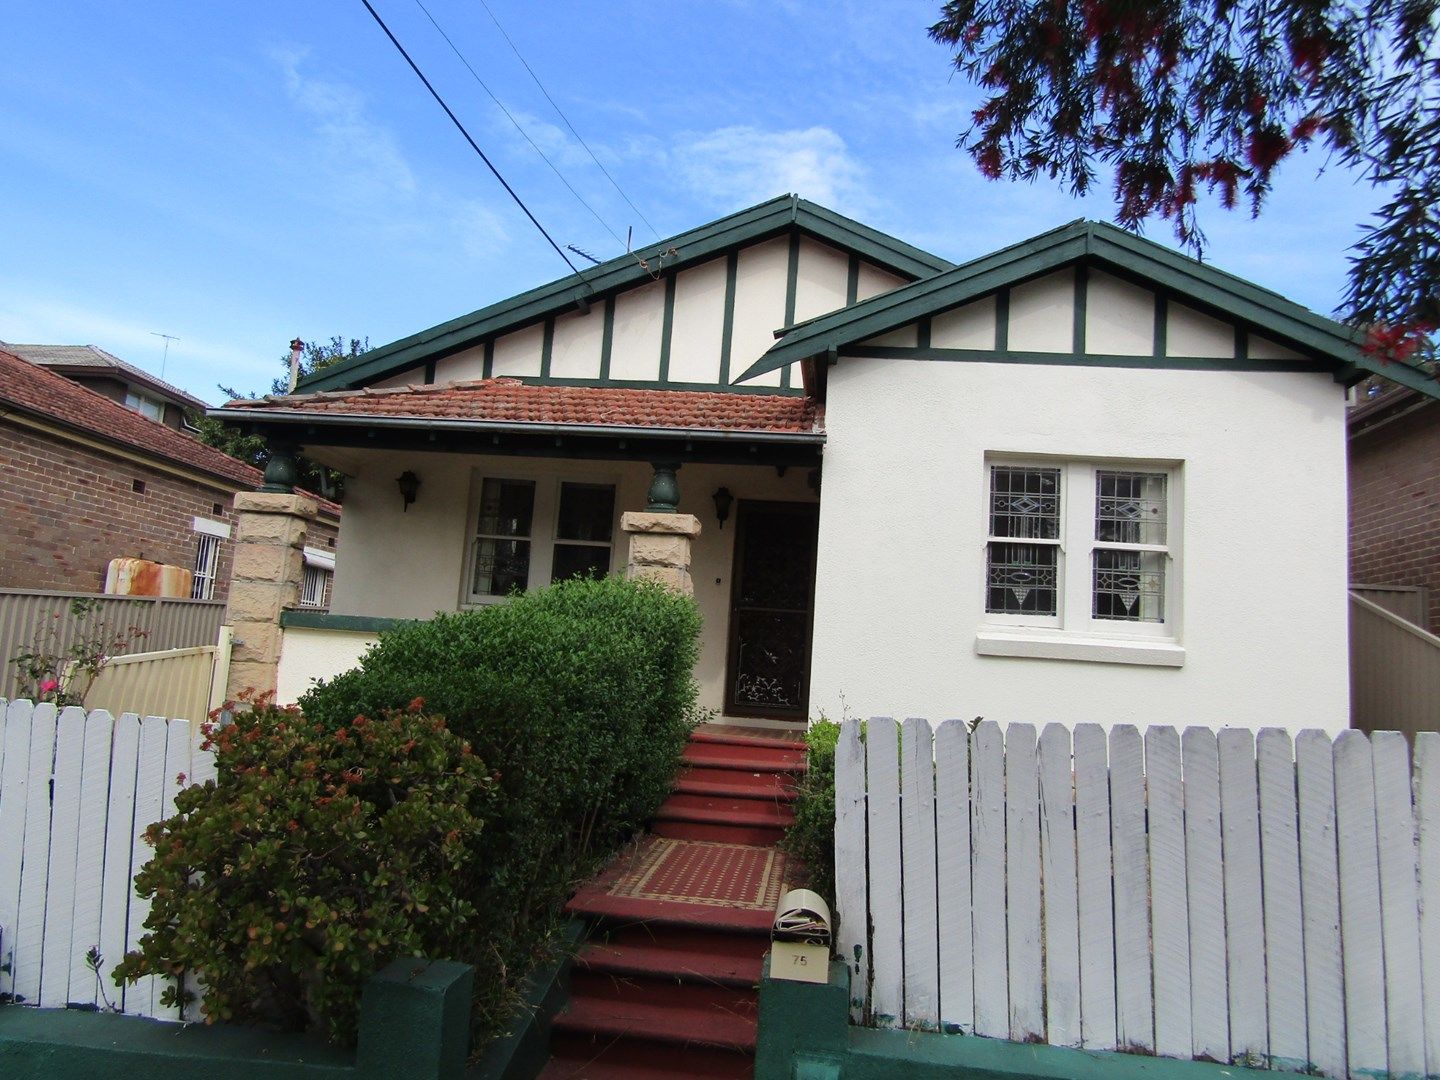 3 bedrooms House in 75 Warialda Street KOGARAH NSW, 2217